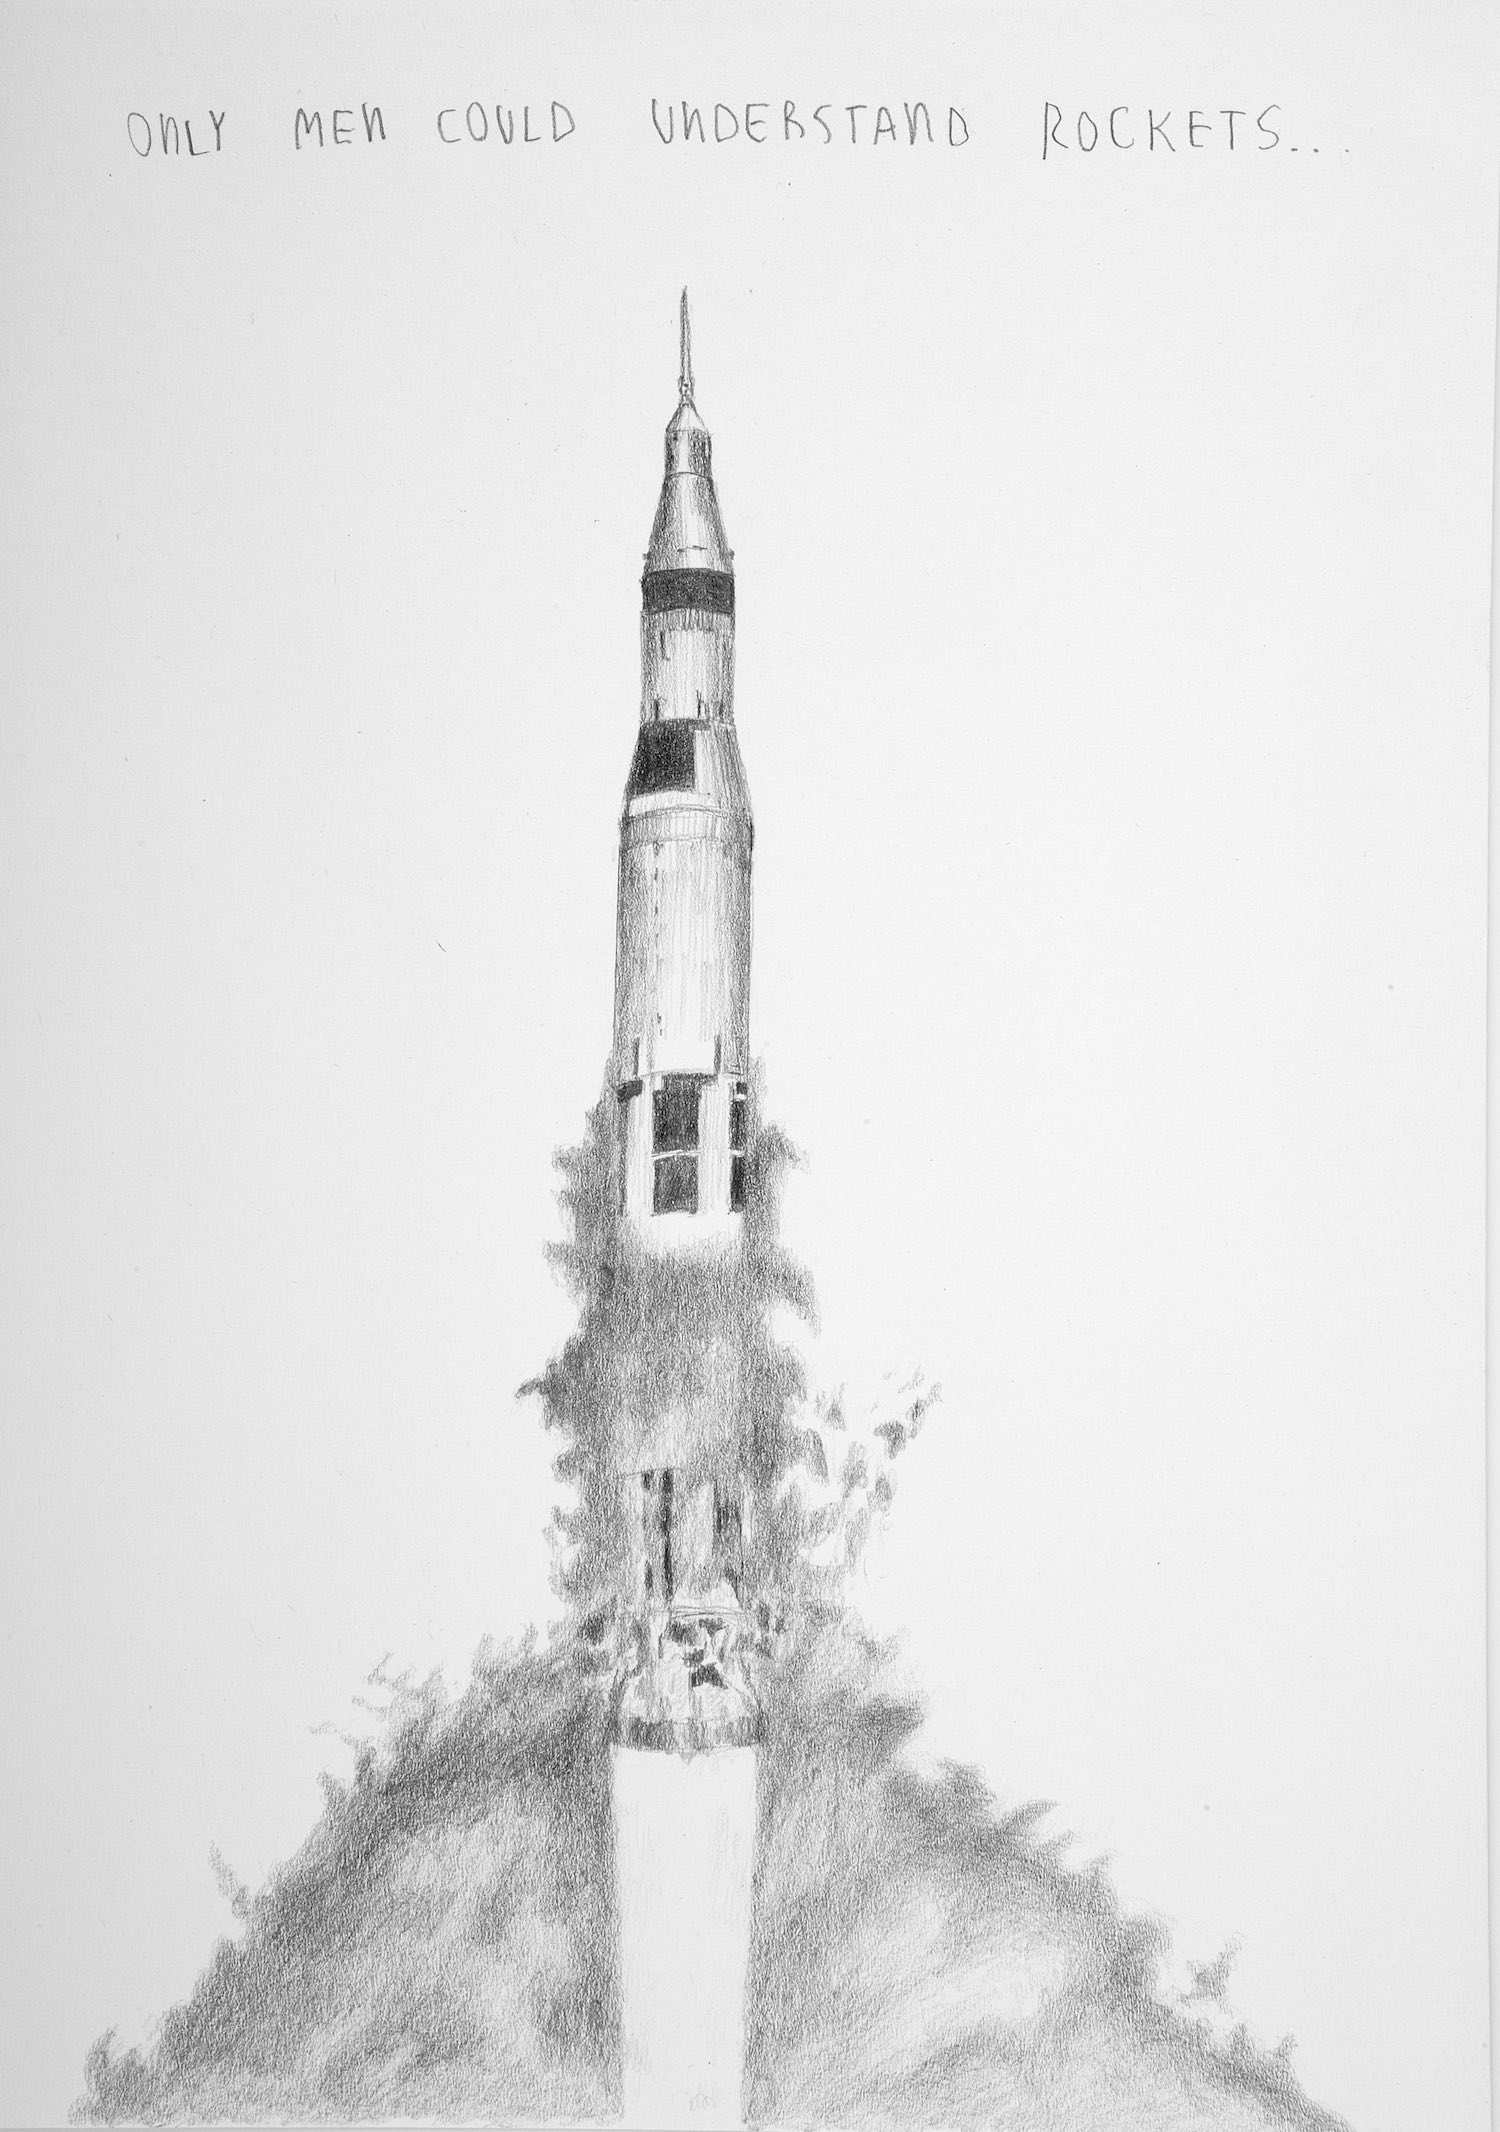   Solo los hombres pueden entender cohetes   Grafito sobre papel&nbsp; &nbsp; &nbsp; &nbsp; &nbsp; &nbsp; 26 x 20 cm.&nbsp;2002    